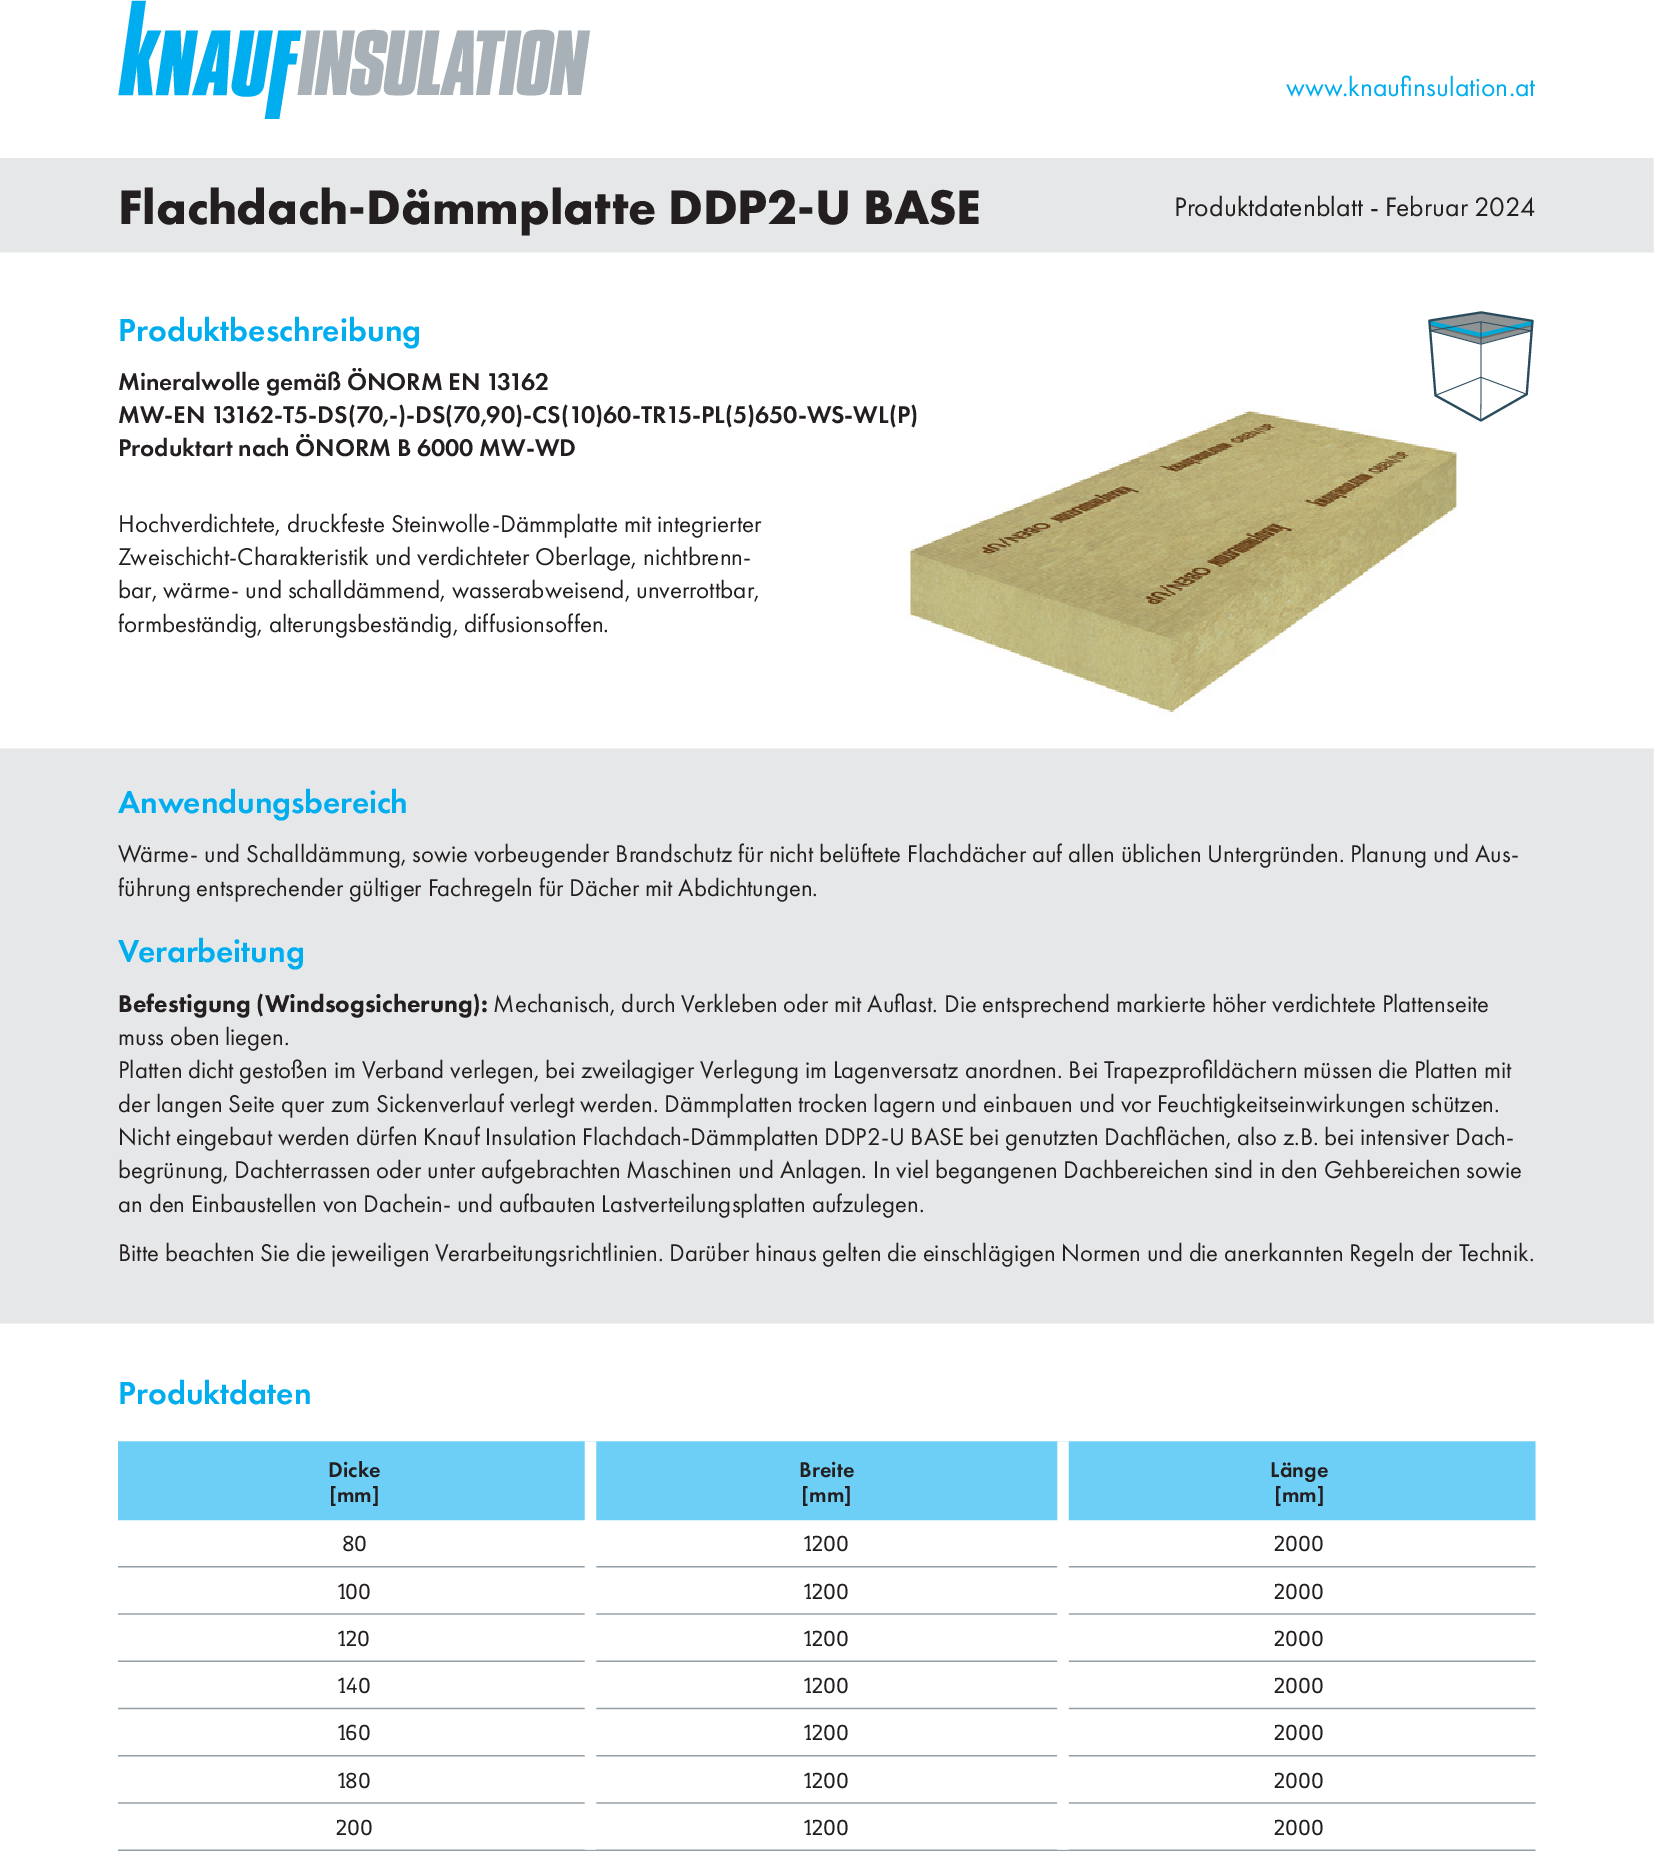 Flachdach-Dämmplatte DDP2-U Base, Produktdatenblatt